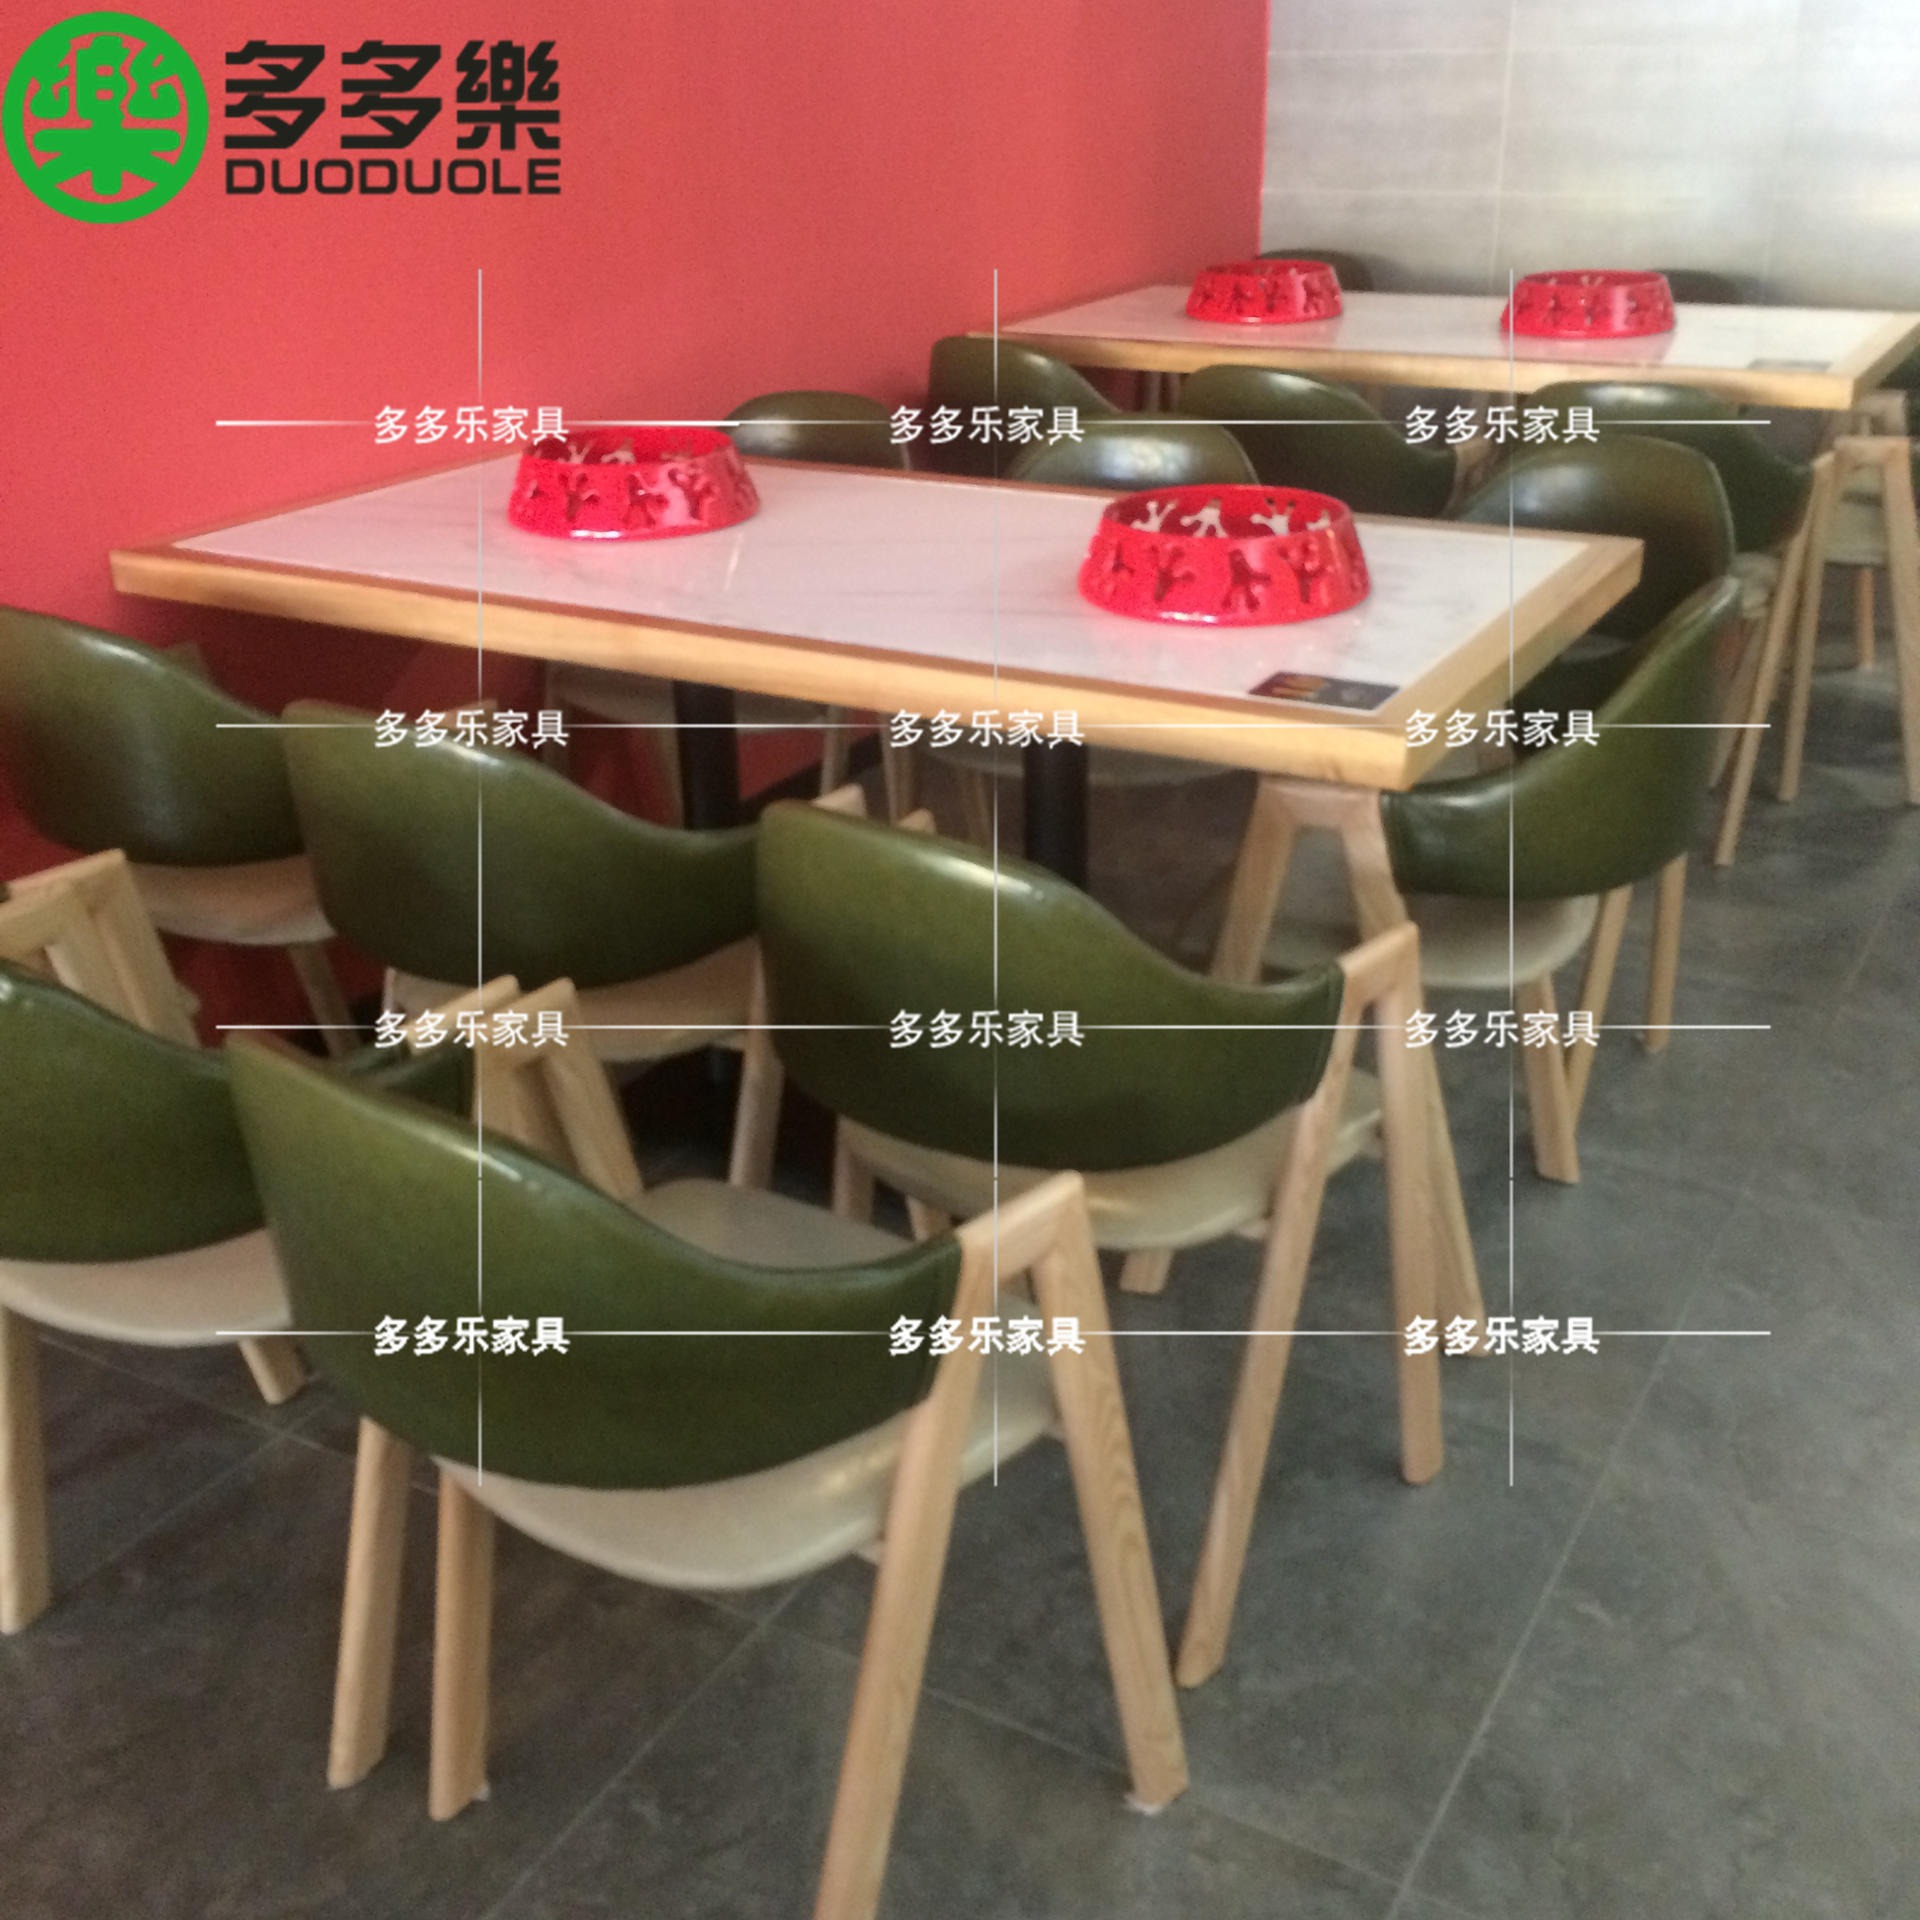 牛蛙餐厅餐桌餐椅 餐饮店餐饮家具定制 实木封边大理石台面餐桌